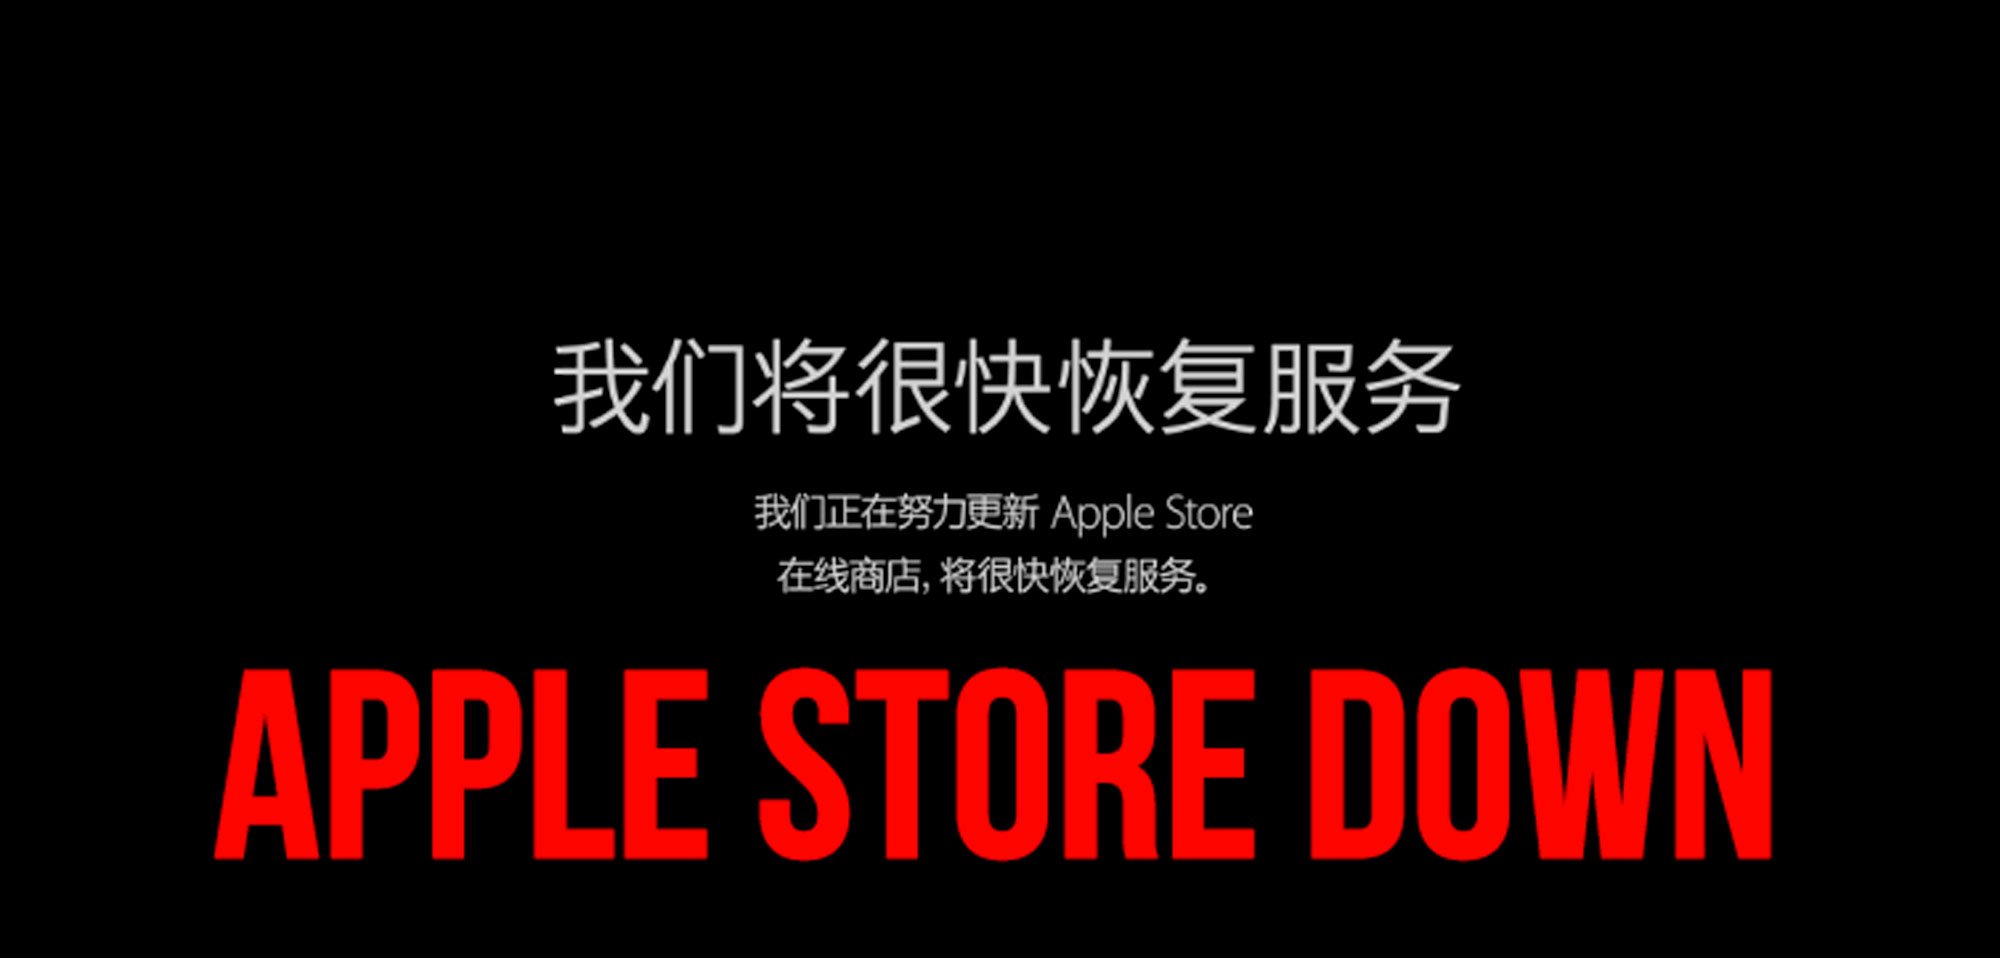 APPLE STORE DOWN: Vorbereitung iPhone 6S Verkauf heute ab 09:01 Uhr 1